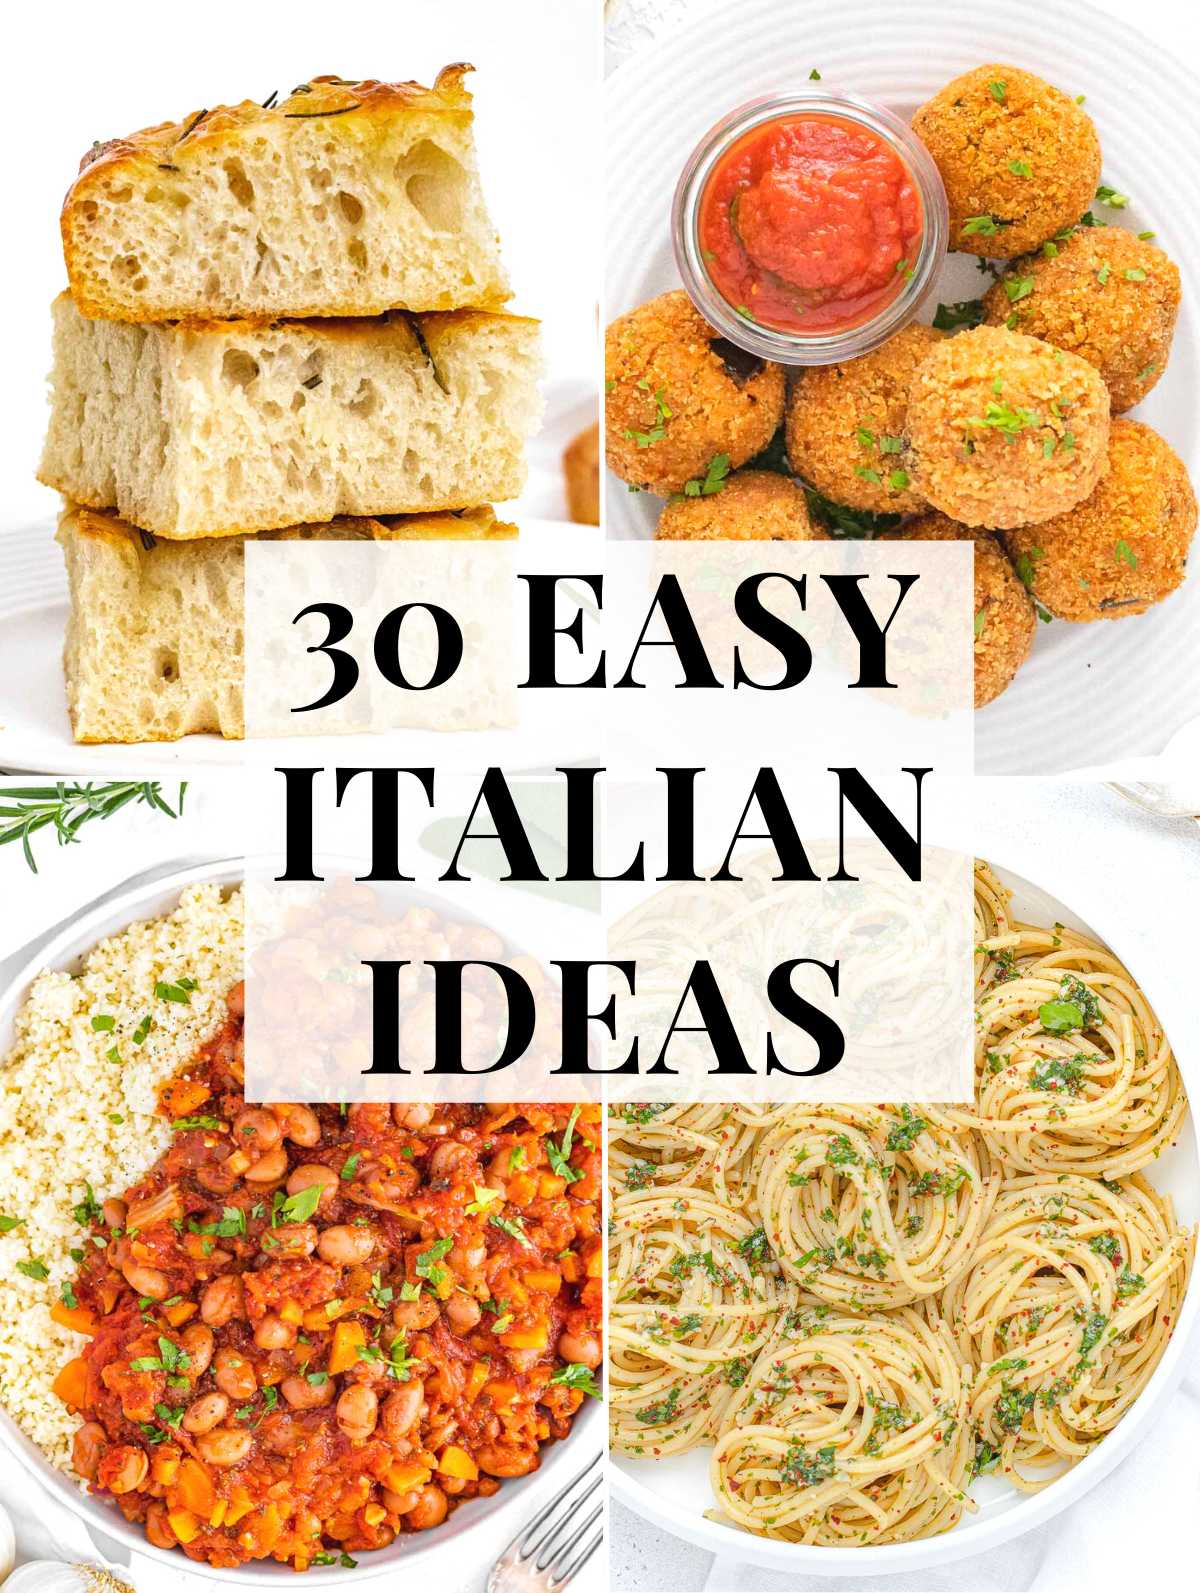 Easy Italian recipes